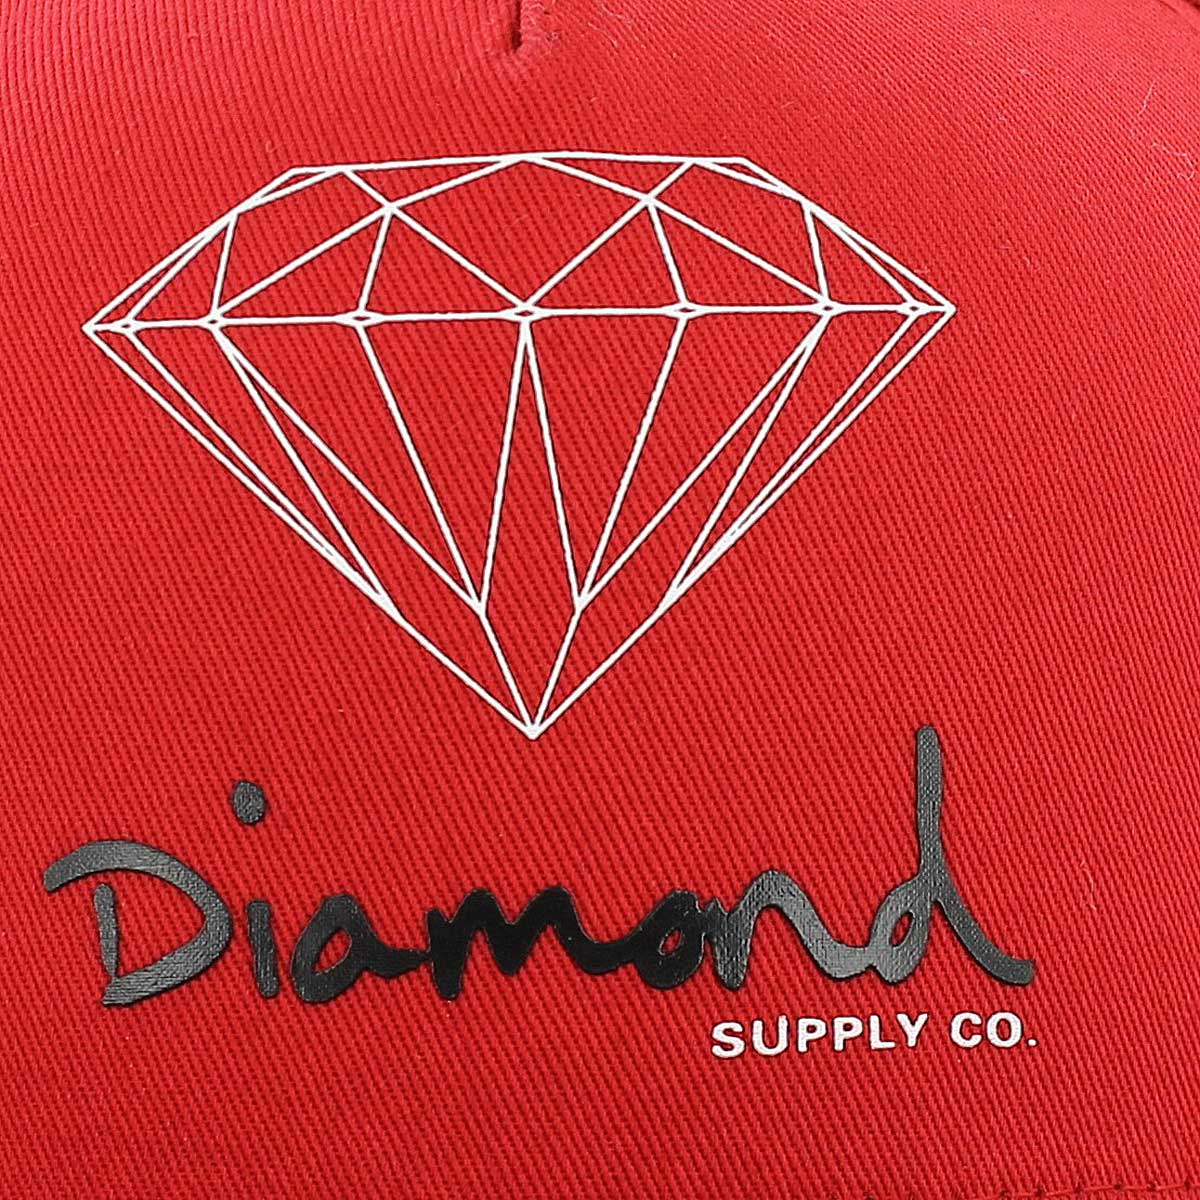 Diamond Weed Logo - Diamond supply co Logos